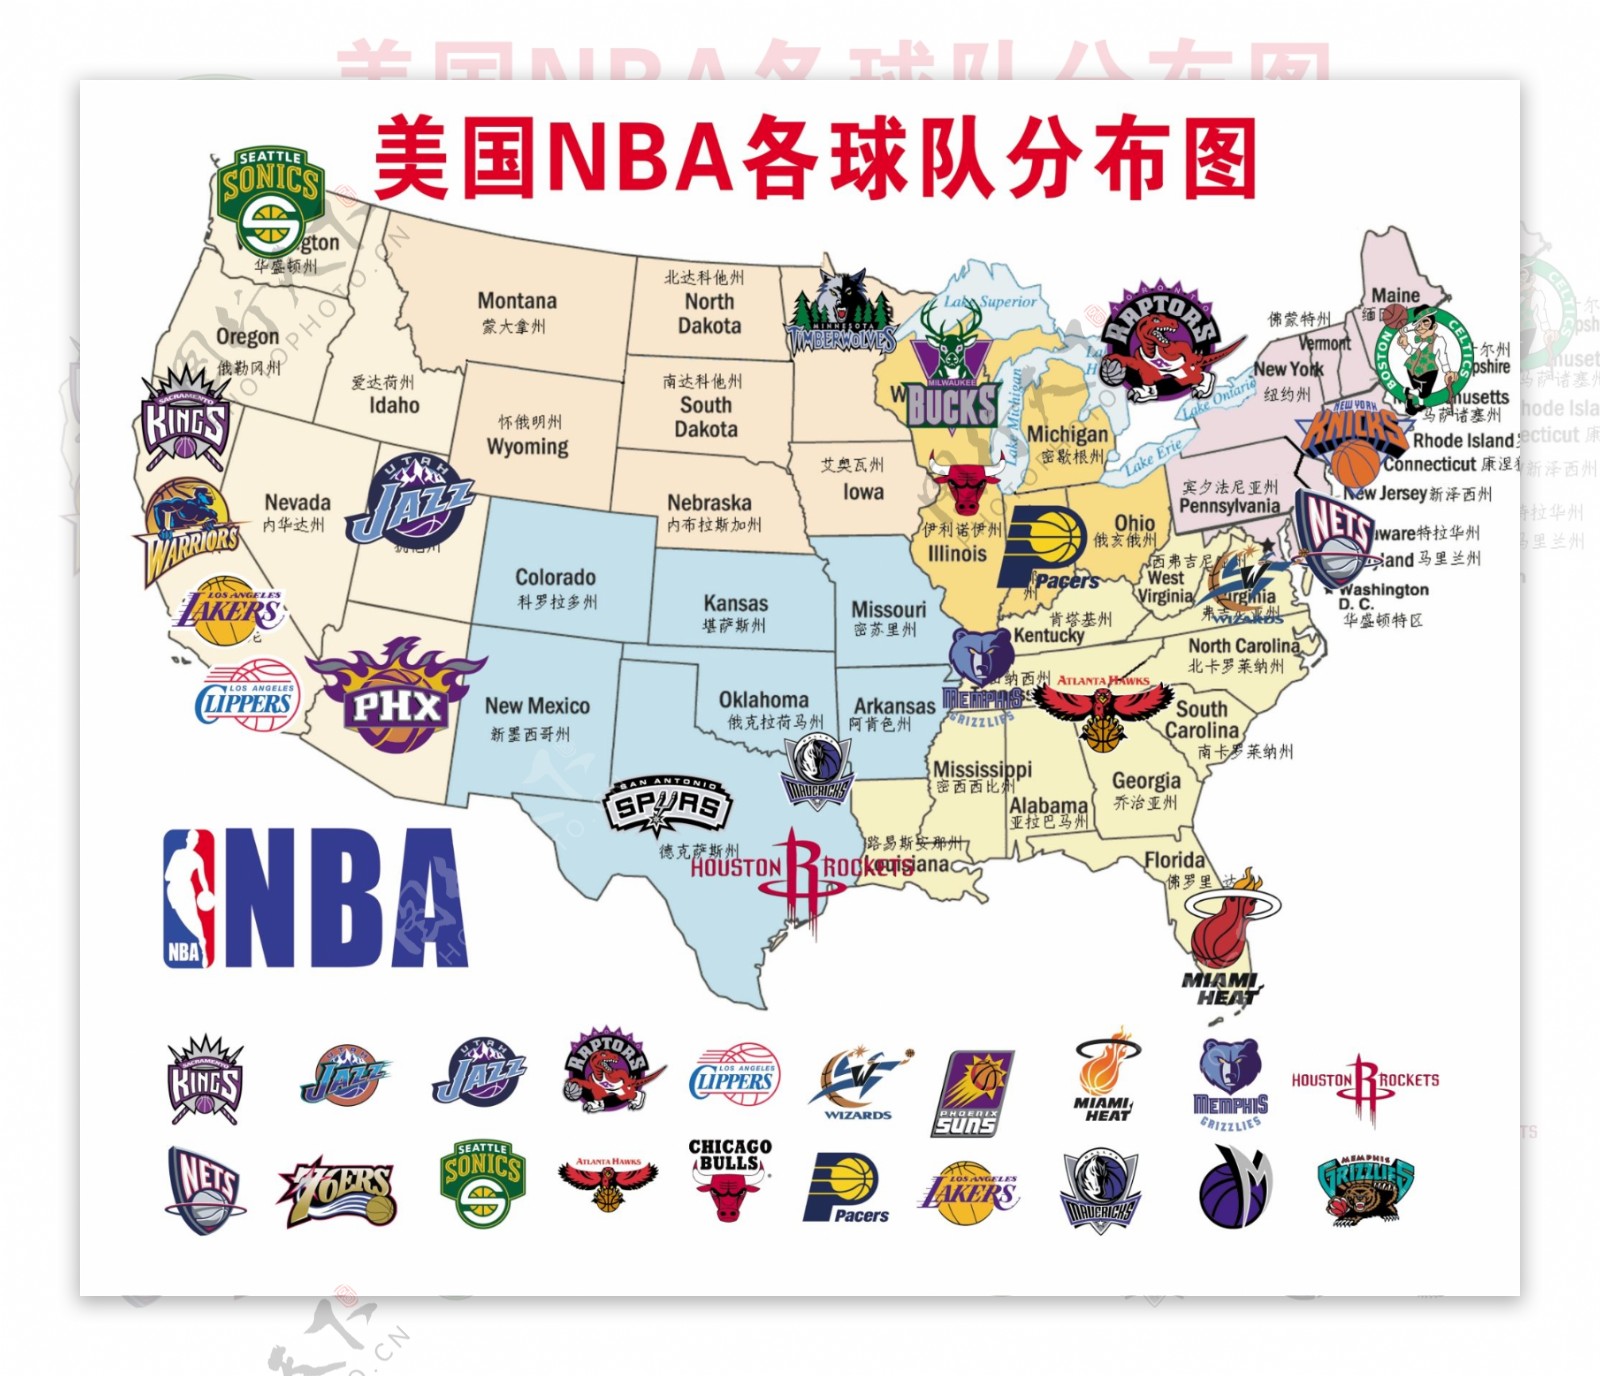 NBA各球队标志图片